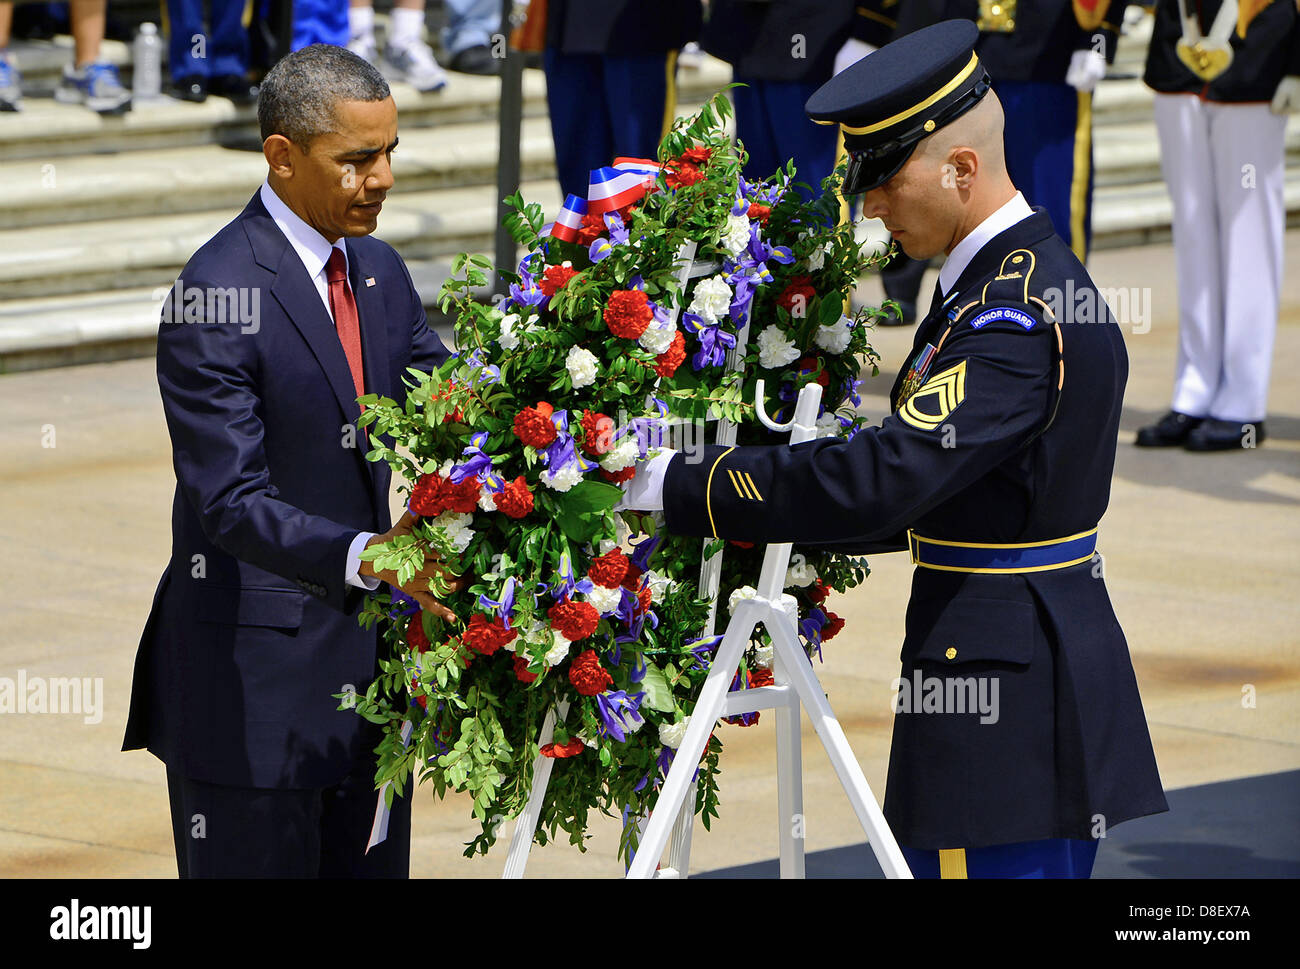 US Präsident Barack Obama legt einen Kranz nieder während der Memorial Day Zeremonie am Grab des unbekannten Soldaten 27. Mai 2013 am Nationalfriedhof Arlington, VA. Stockfoto